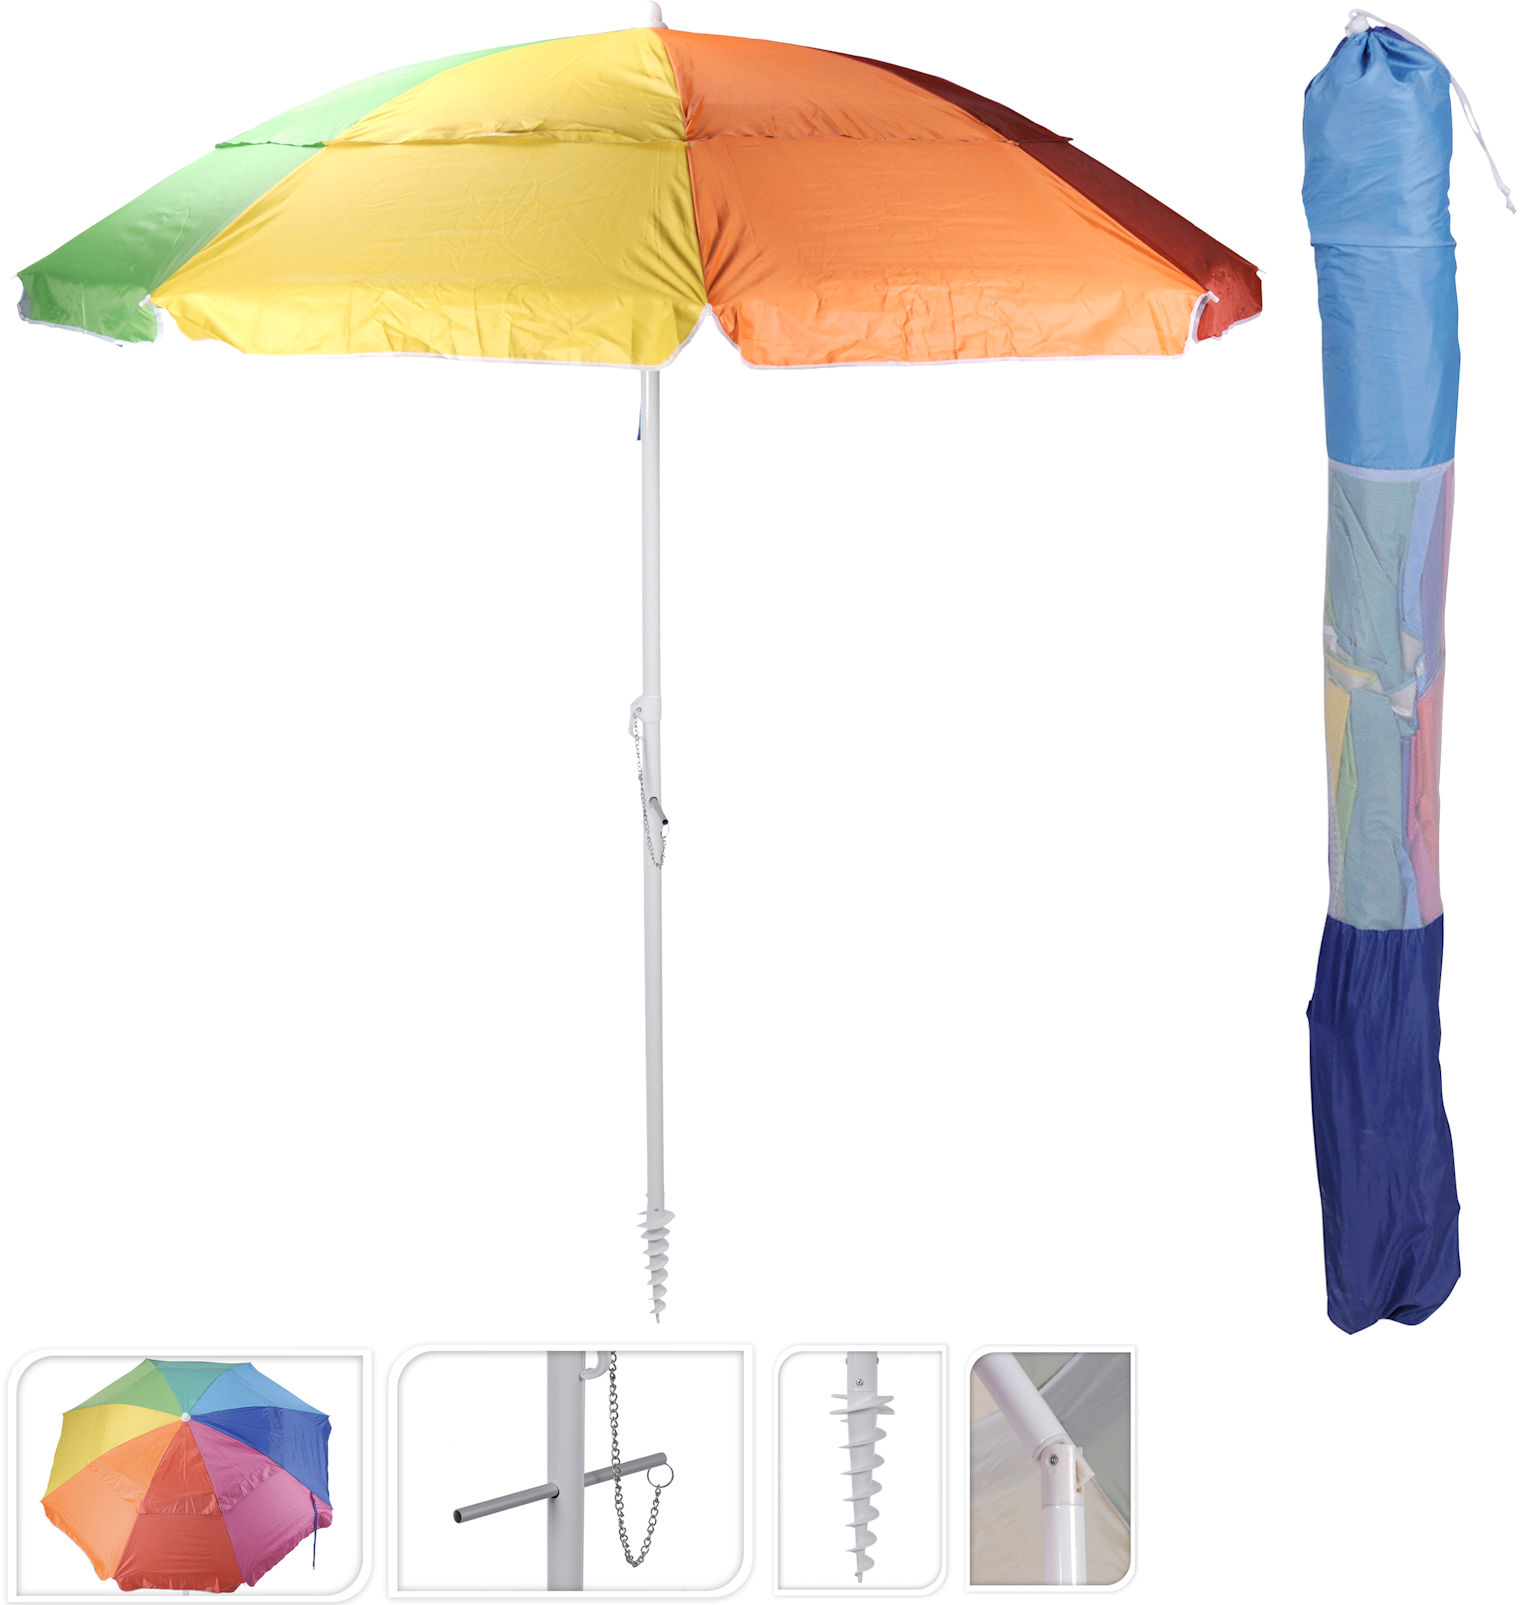 Sonnenschirm bunt 220 cm inkl. Bodenhülse - 50+ UV Schutz - Strandschirm Schirm